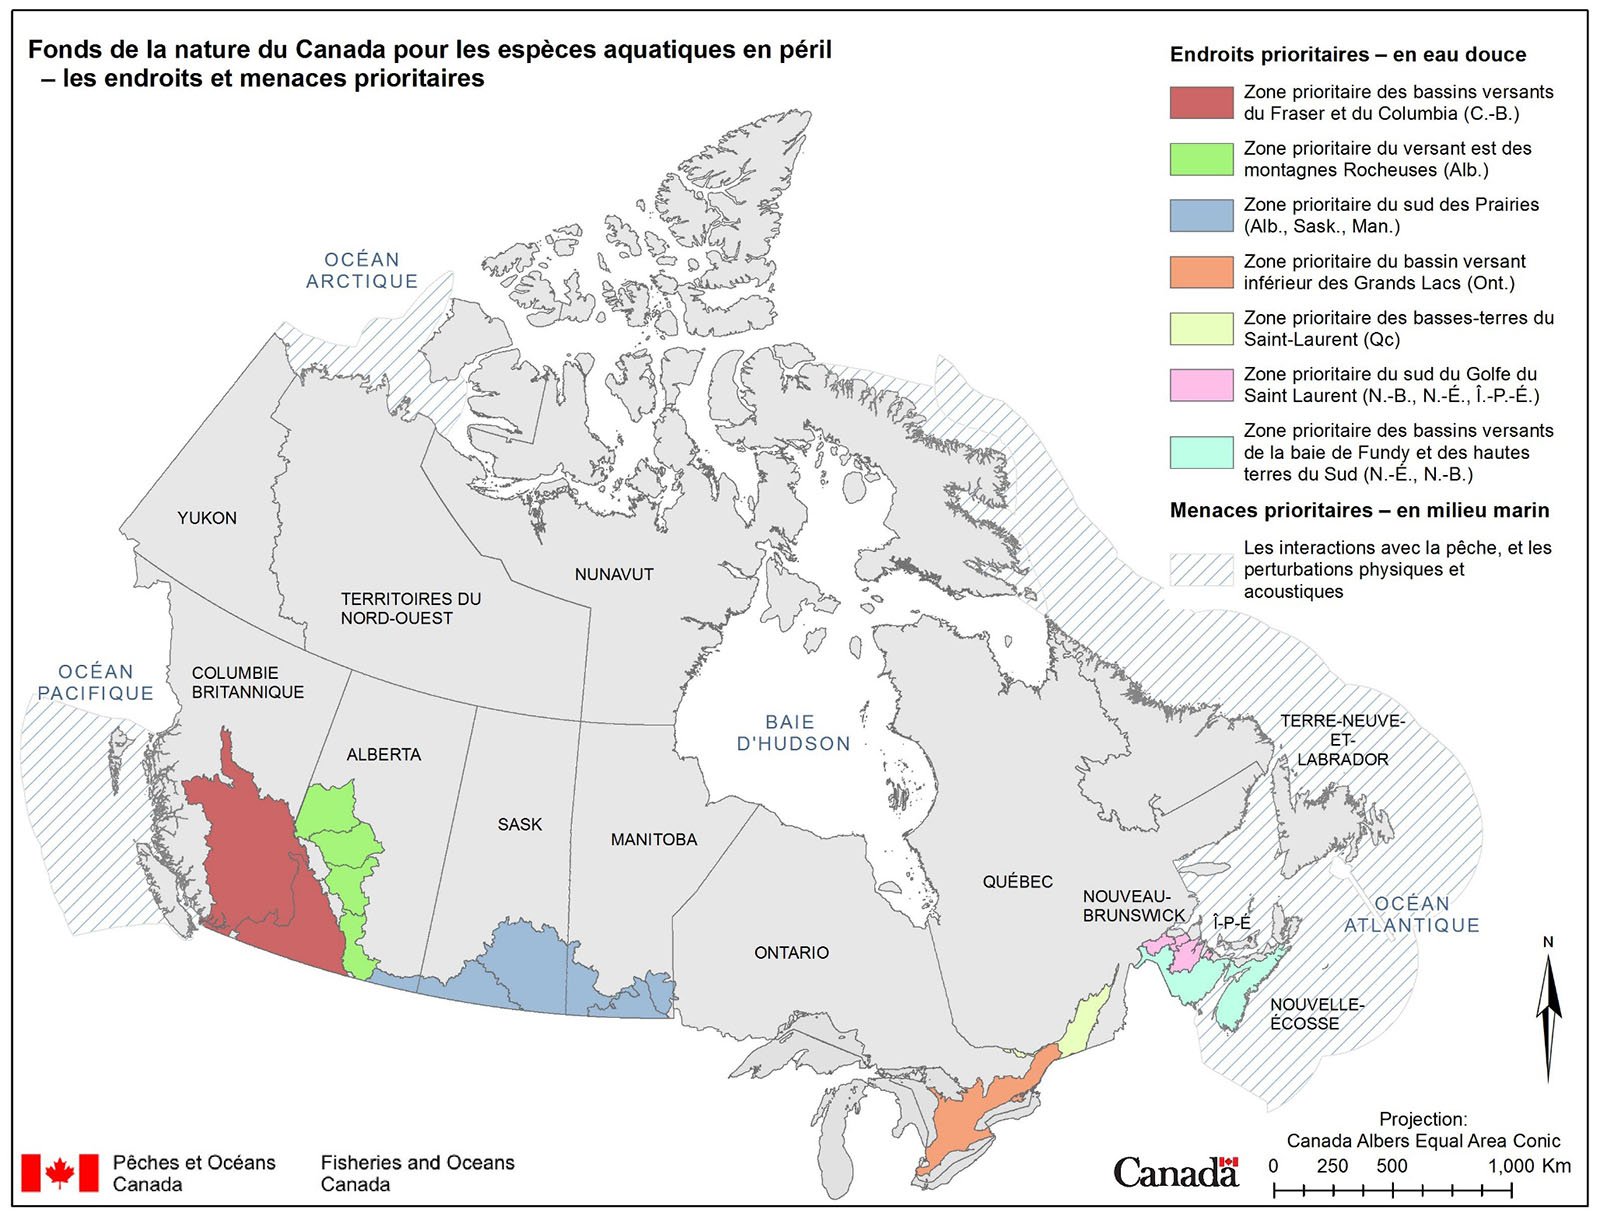 Fonds de la nature du Canada pour les espèces en péril - les endroits et menaces prioritaires 